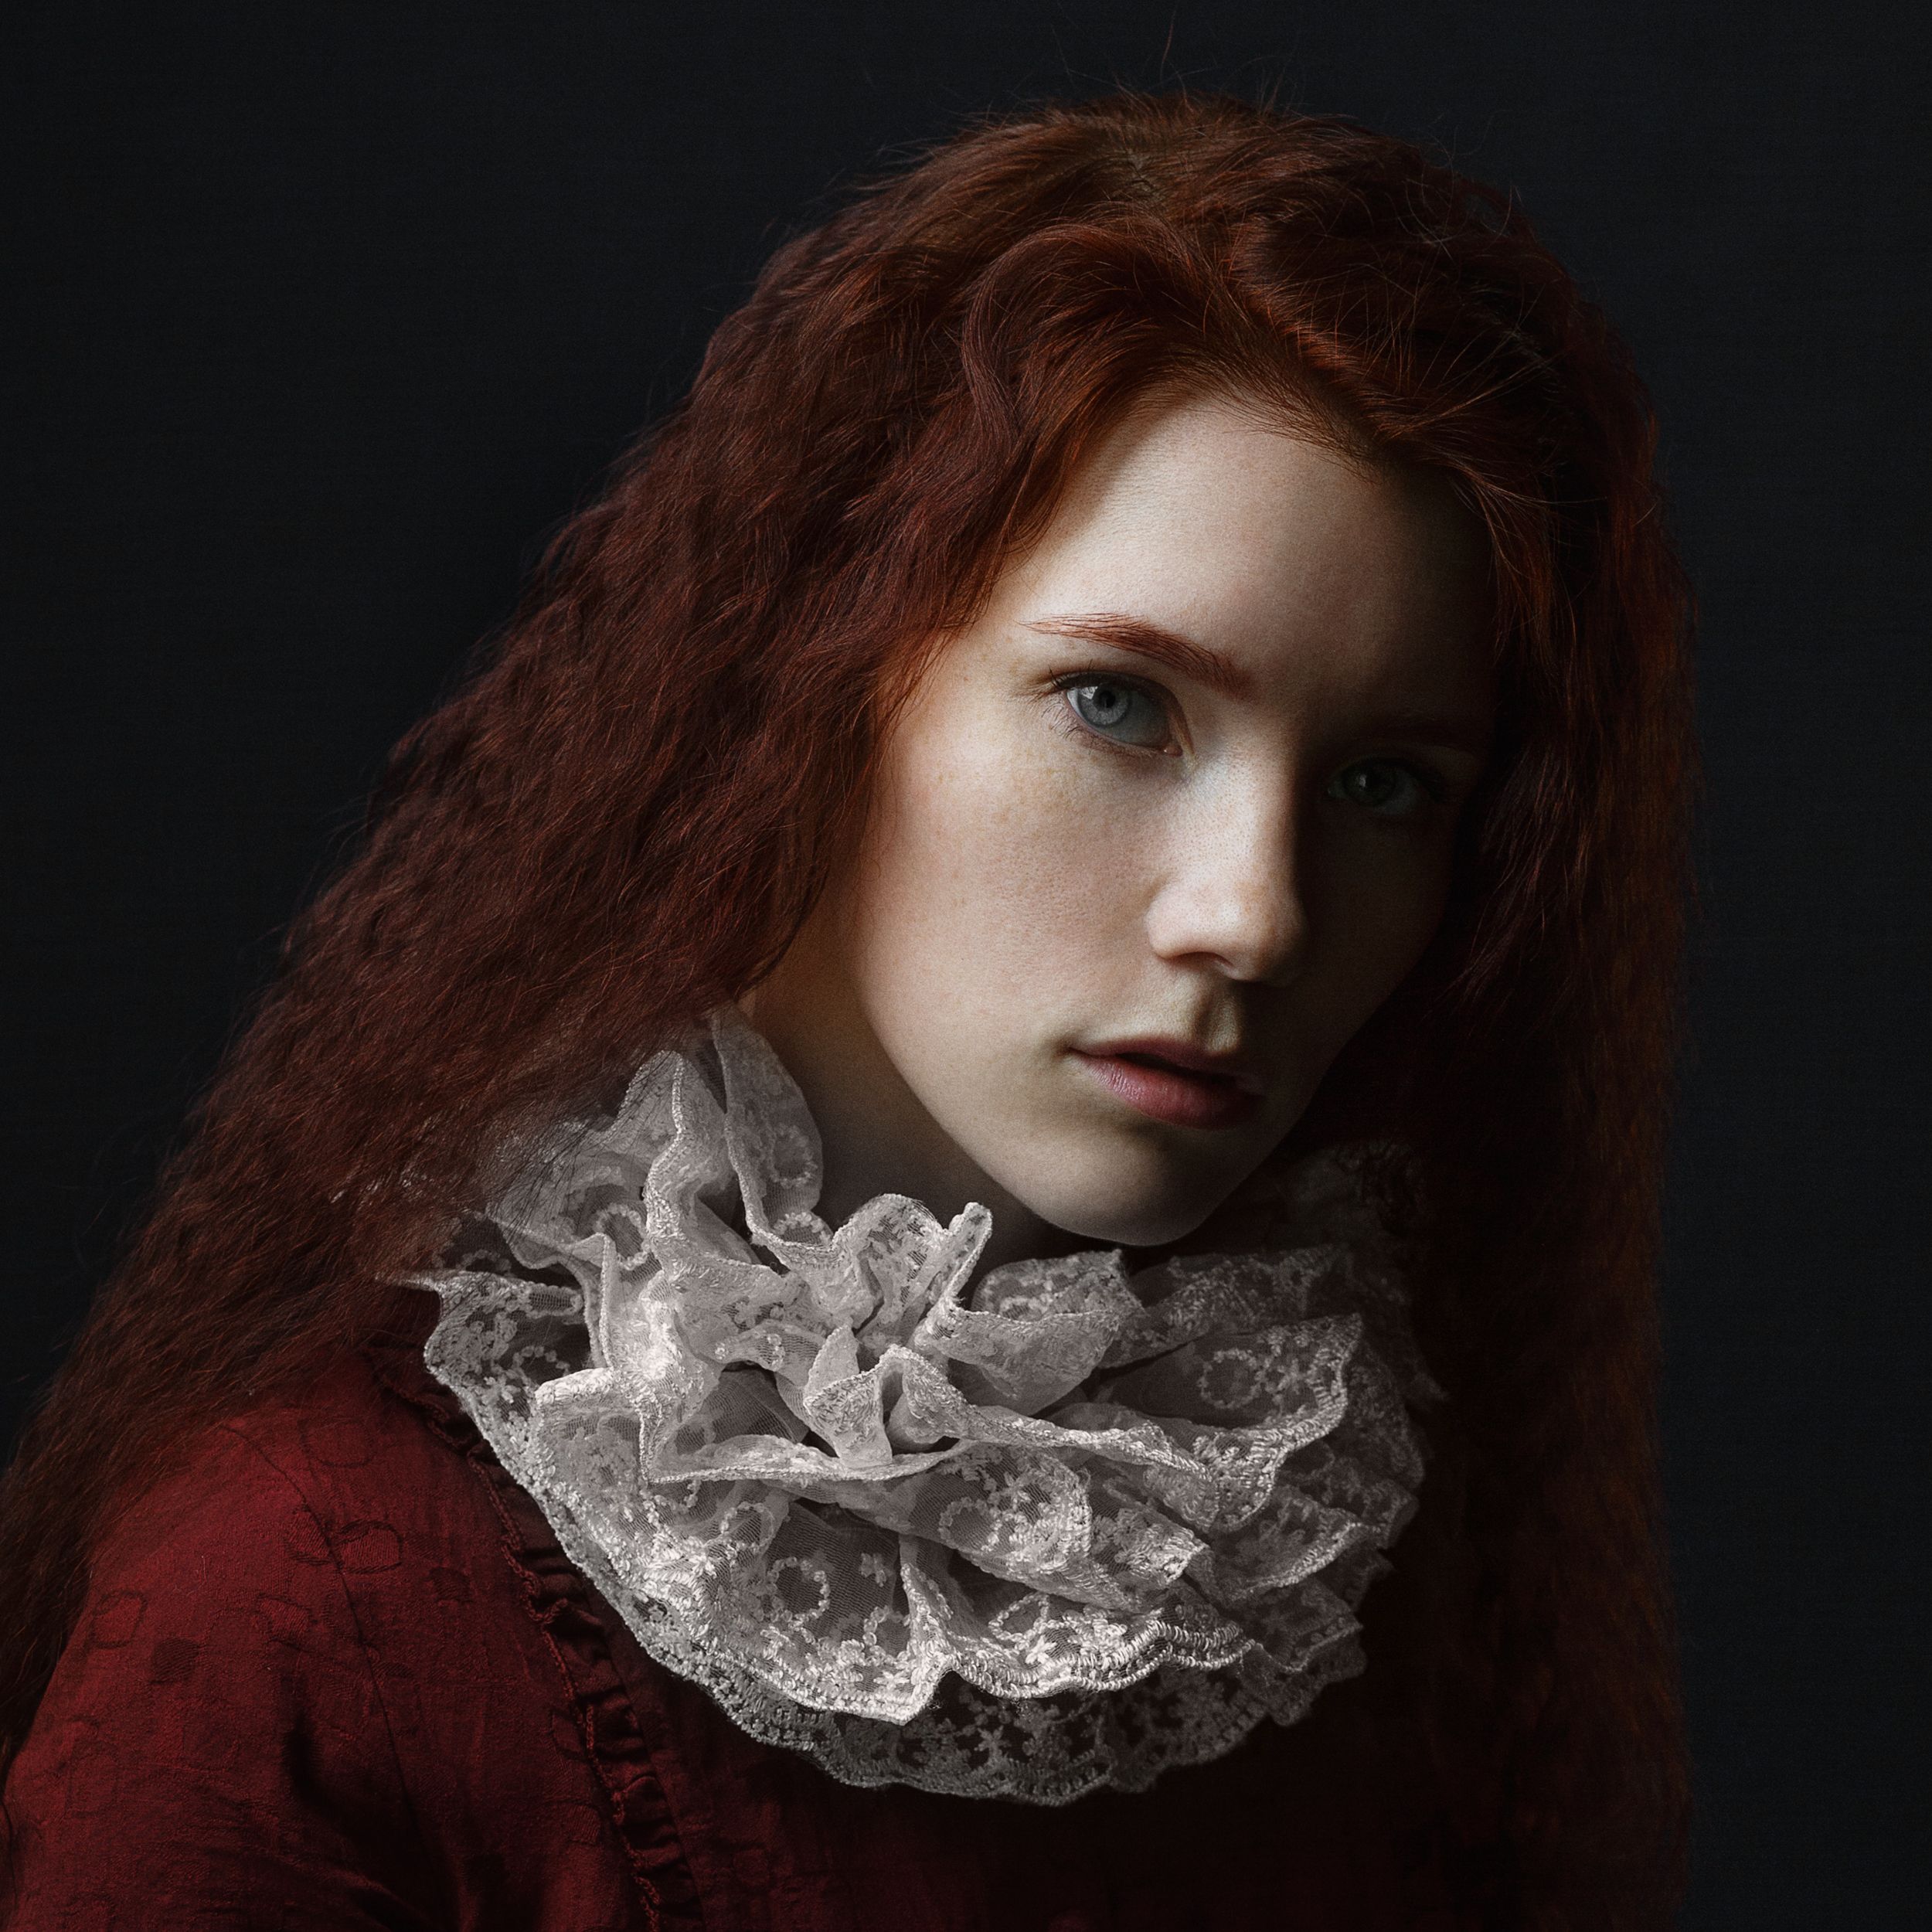 темная сторона, рыжие волосы, конопатая, девушка, пристальный взгляд,студия, Оксана Ведмеденко